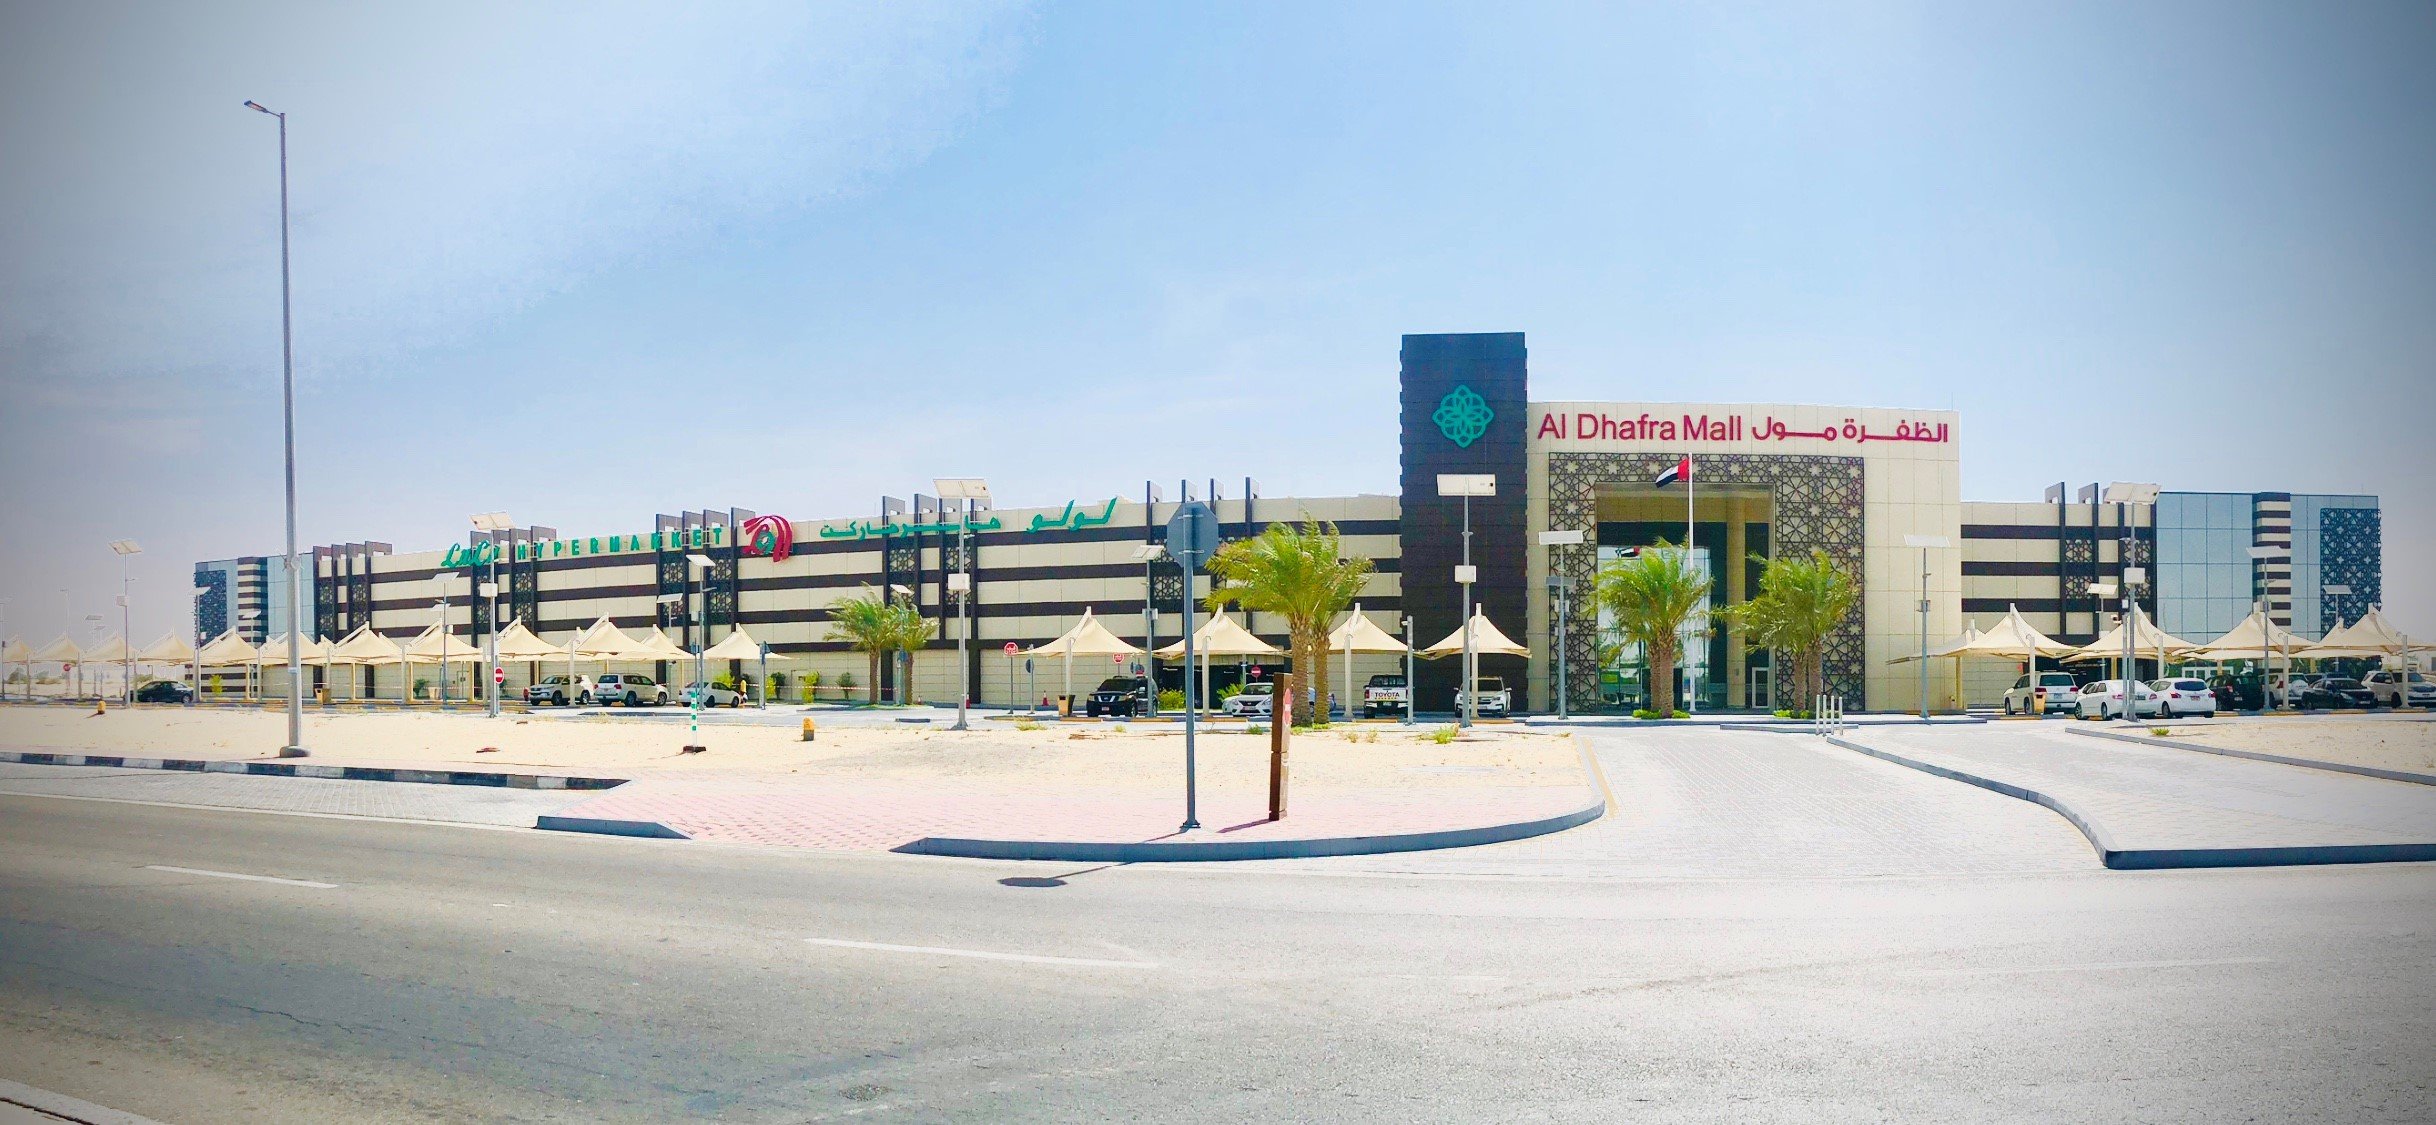 Al Dhafra Mall